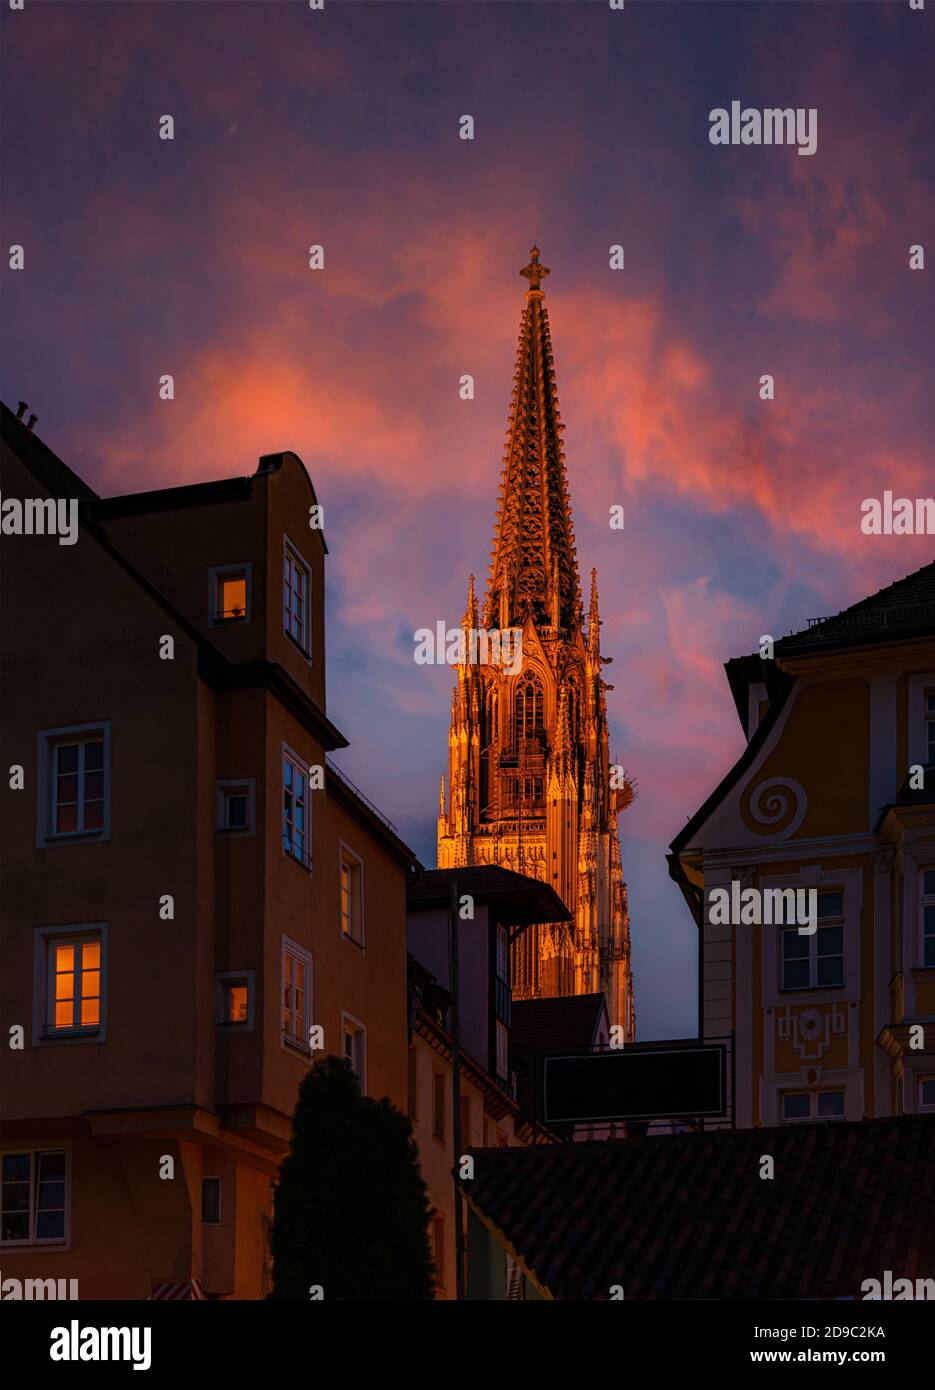 Vue sur la vieille ville avec la tour de la cathédrale en Bavière, Allemagne, Europe. Scène de coucher de soleil avec ciel nuageux en arrière-plan. Architecture et voyages. Banque D'Images